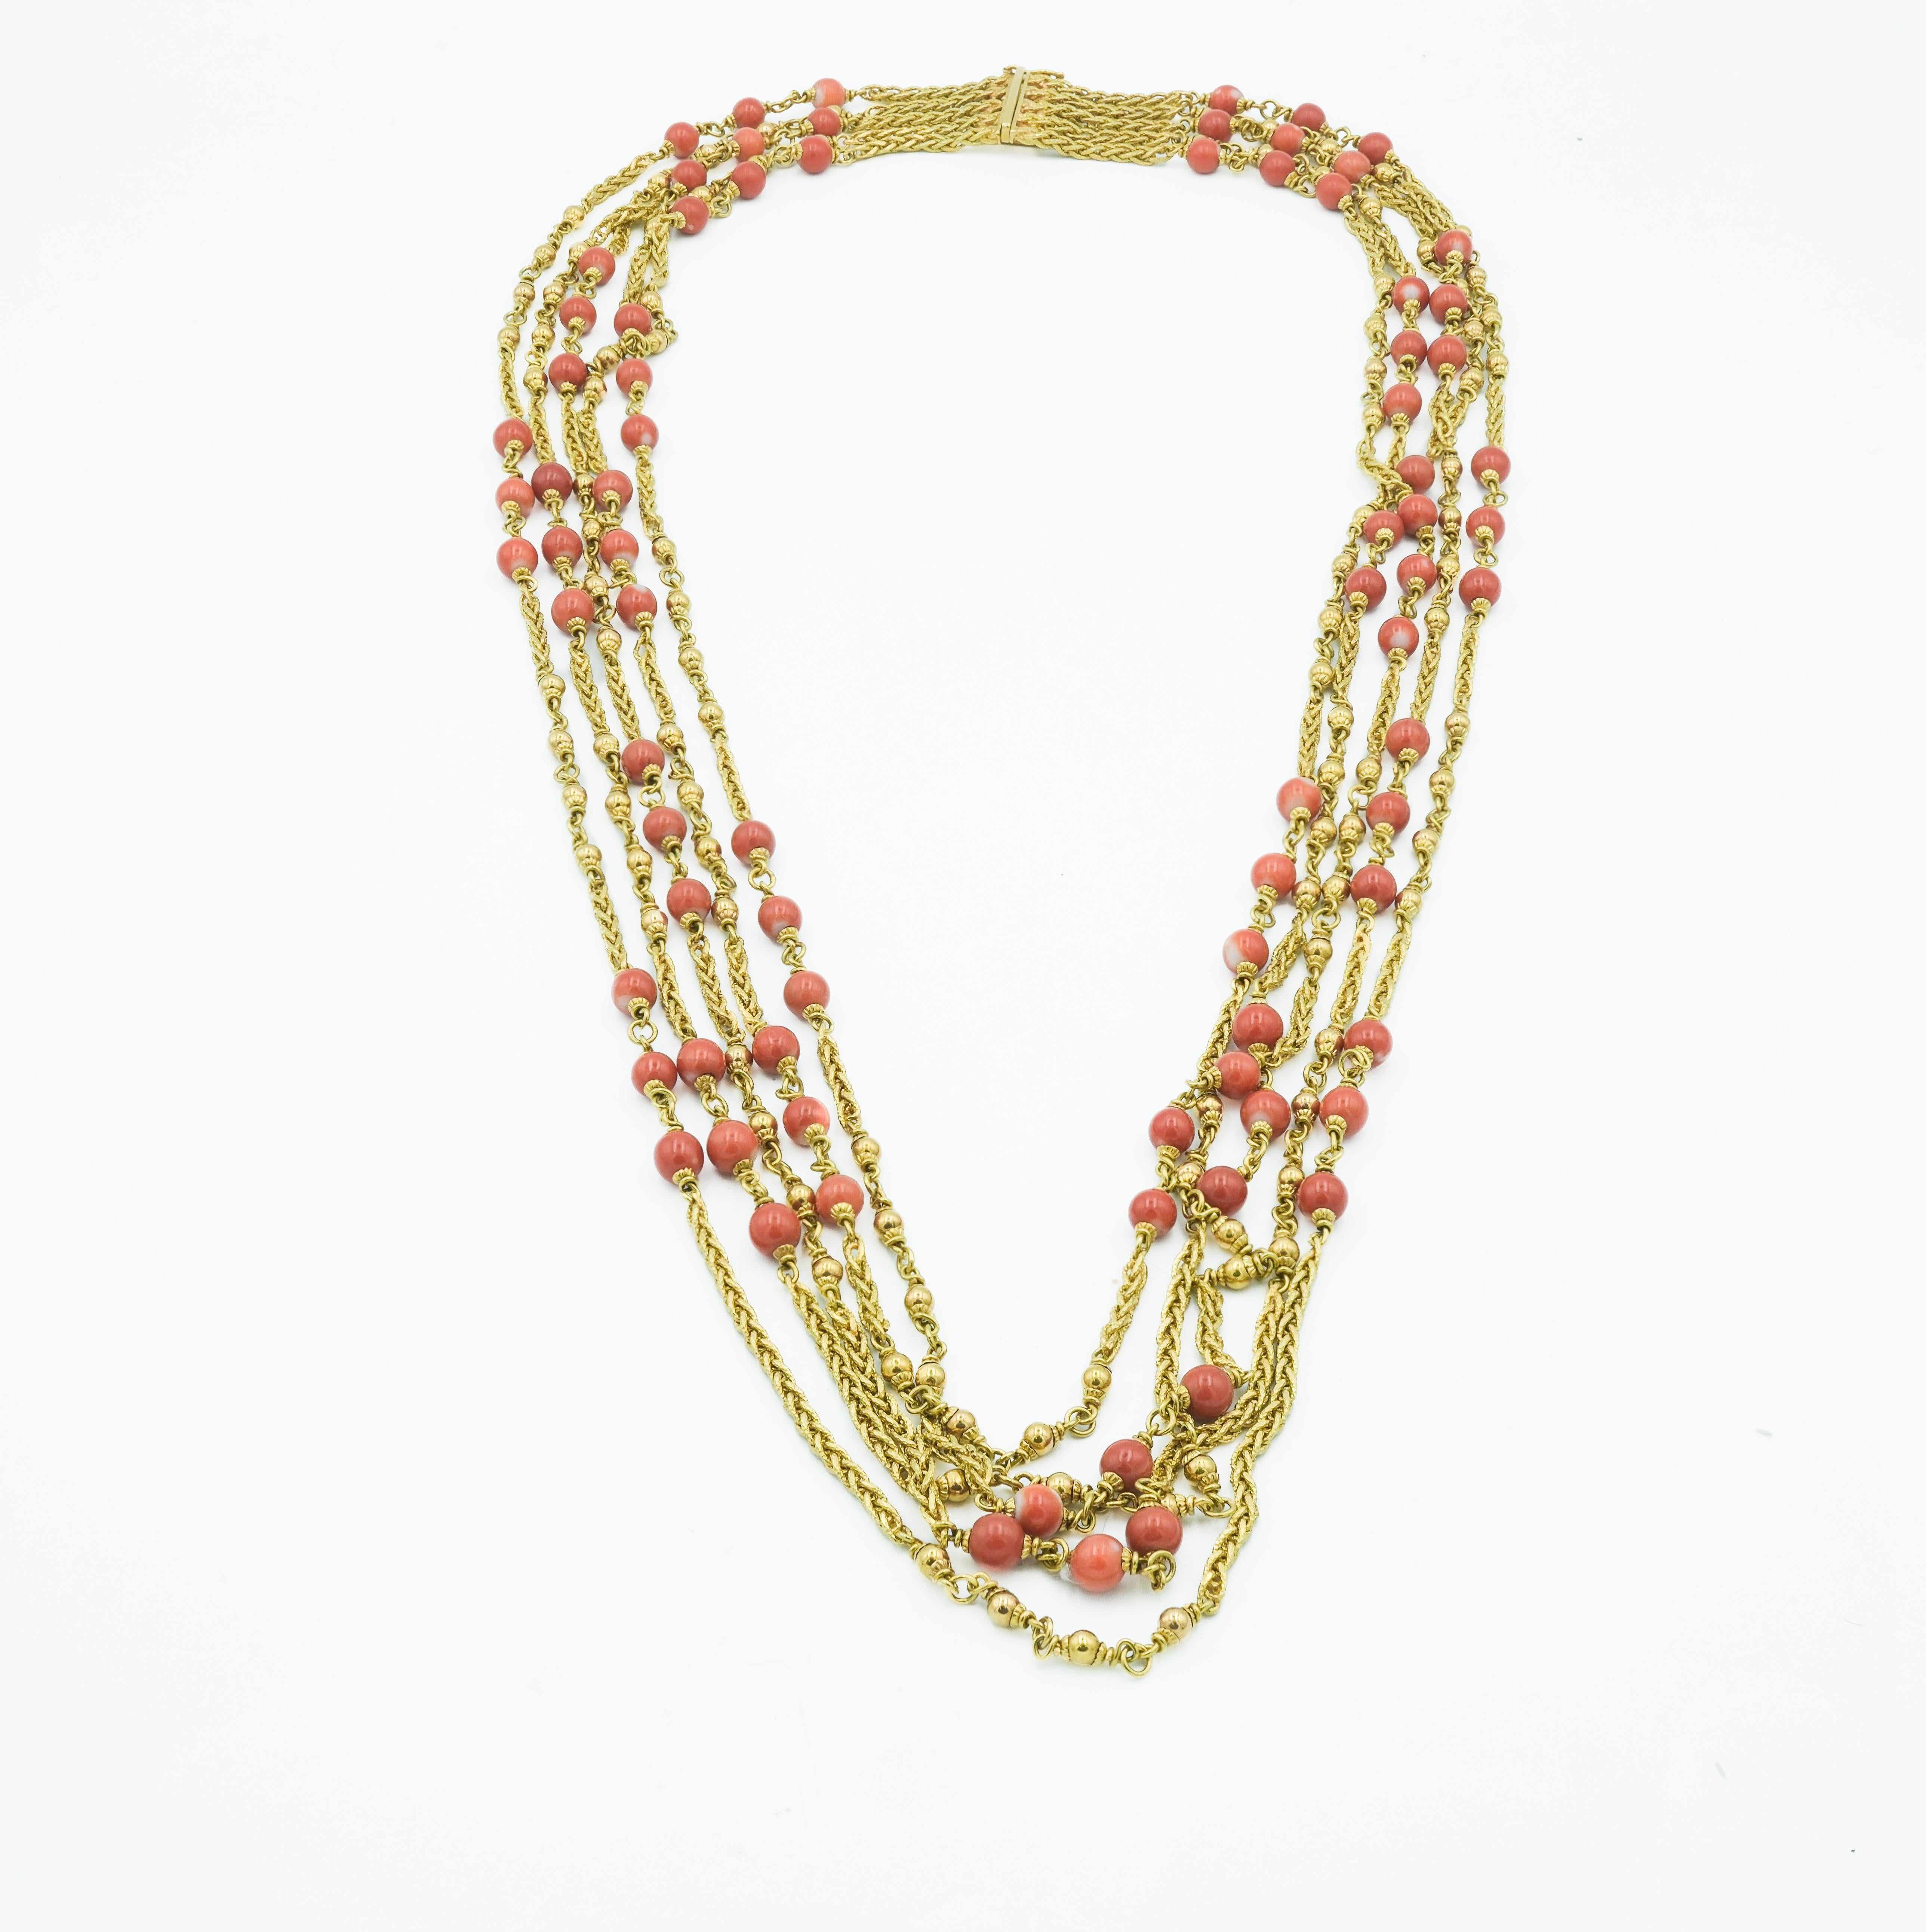 Diese mehrreihige, mehrschichtige Halskette ist ein handgefertigtes Stück aus 18 Karat Gelbgold und mit Korallenperlen verziert. Das Design besteht aus mehreren Ketten, die ineinander verschlungen sind und in Kaskadenform verlaufen, wodurch ein